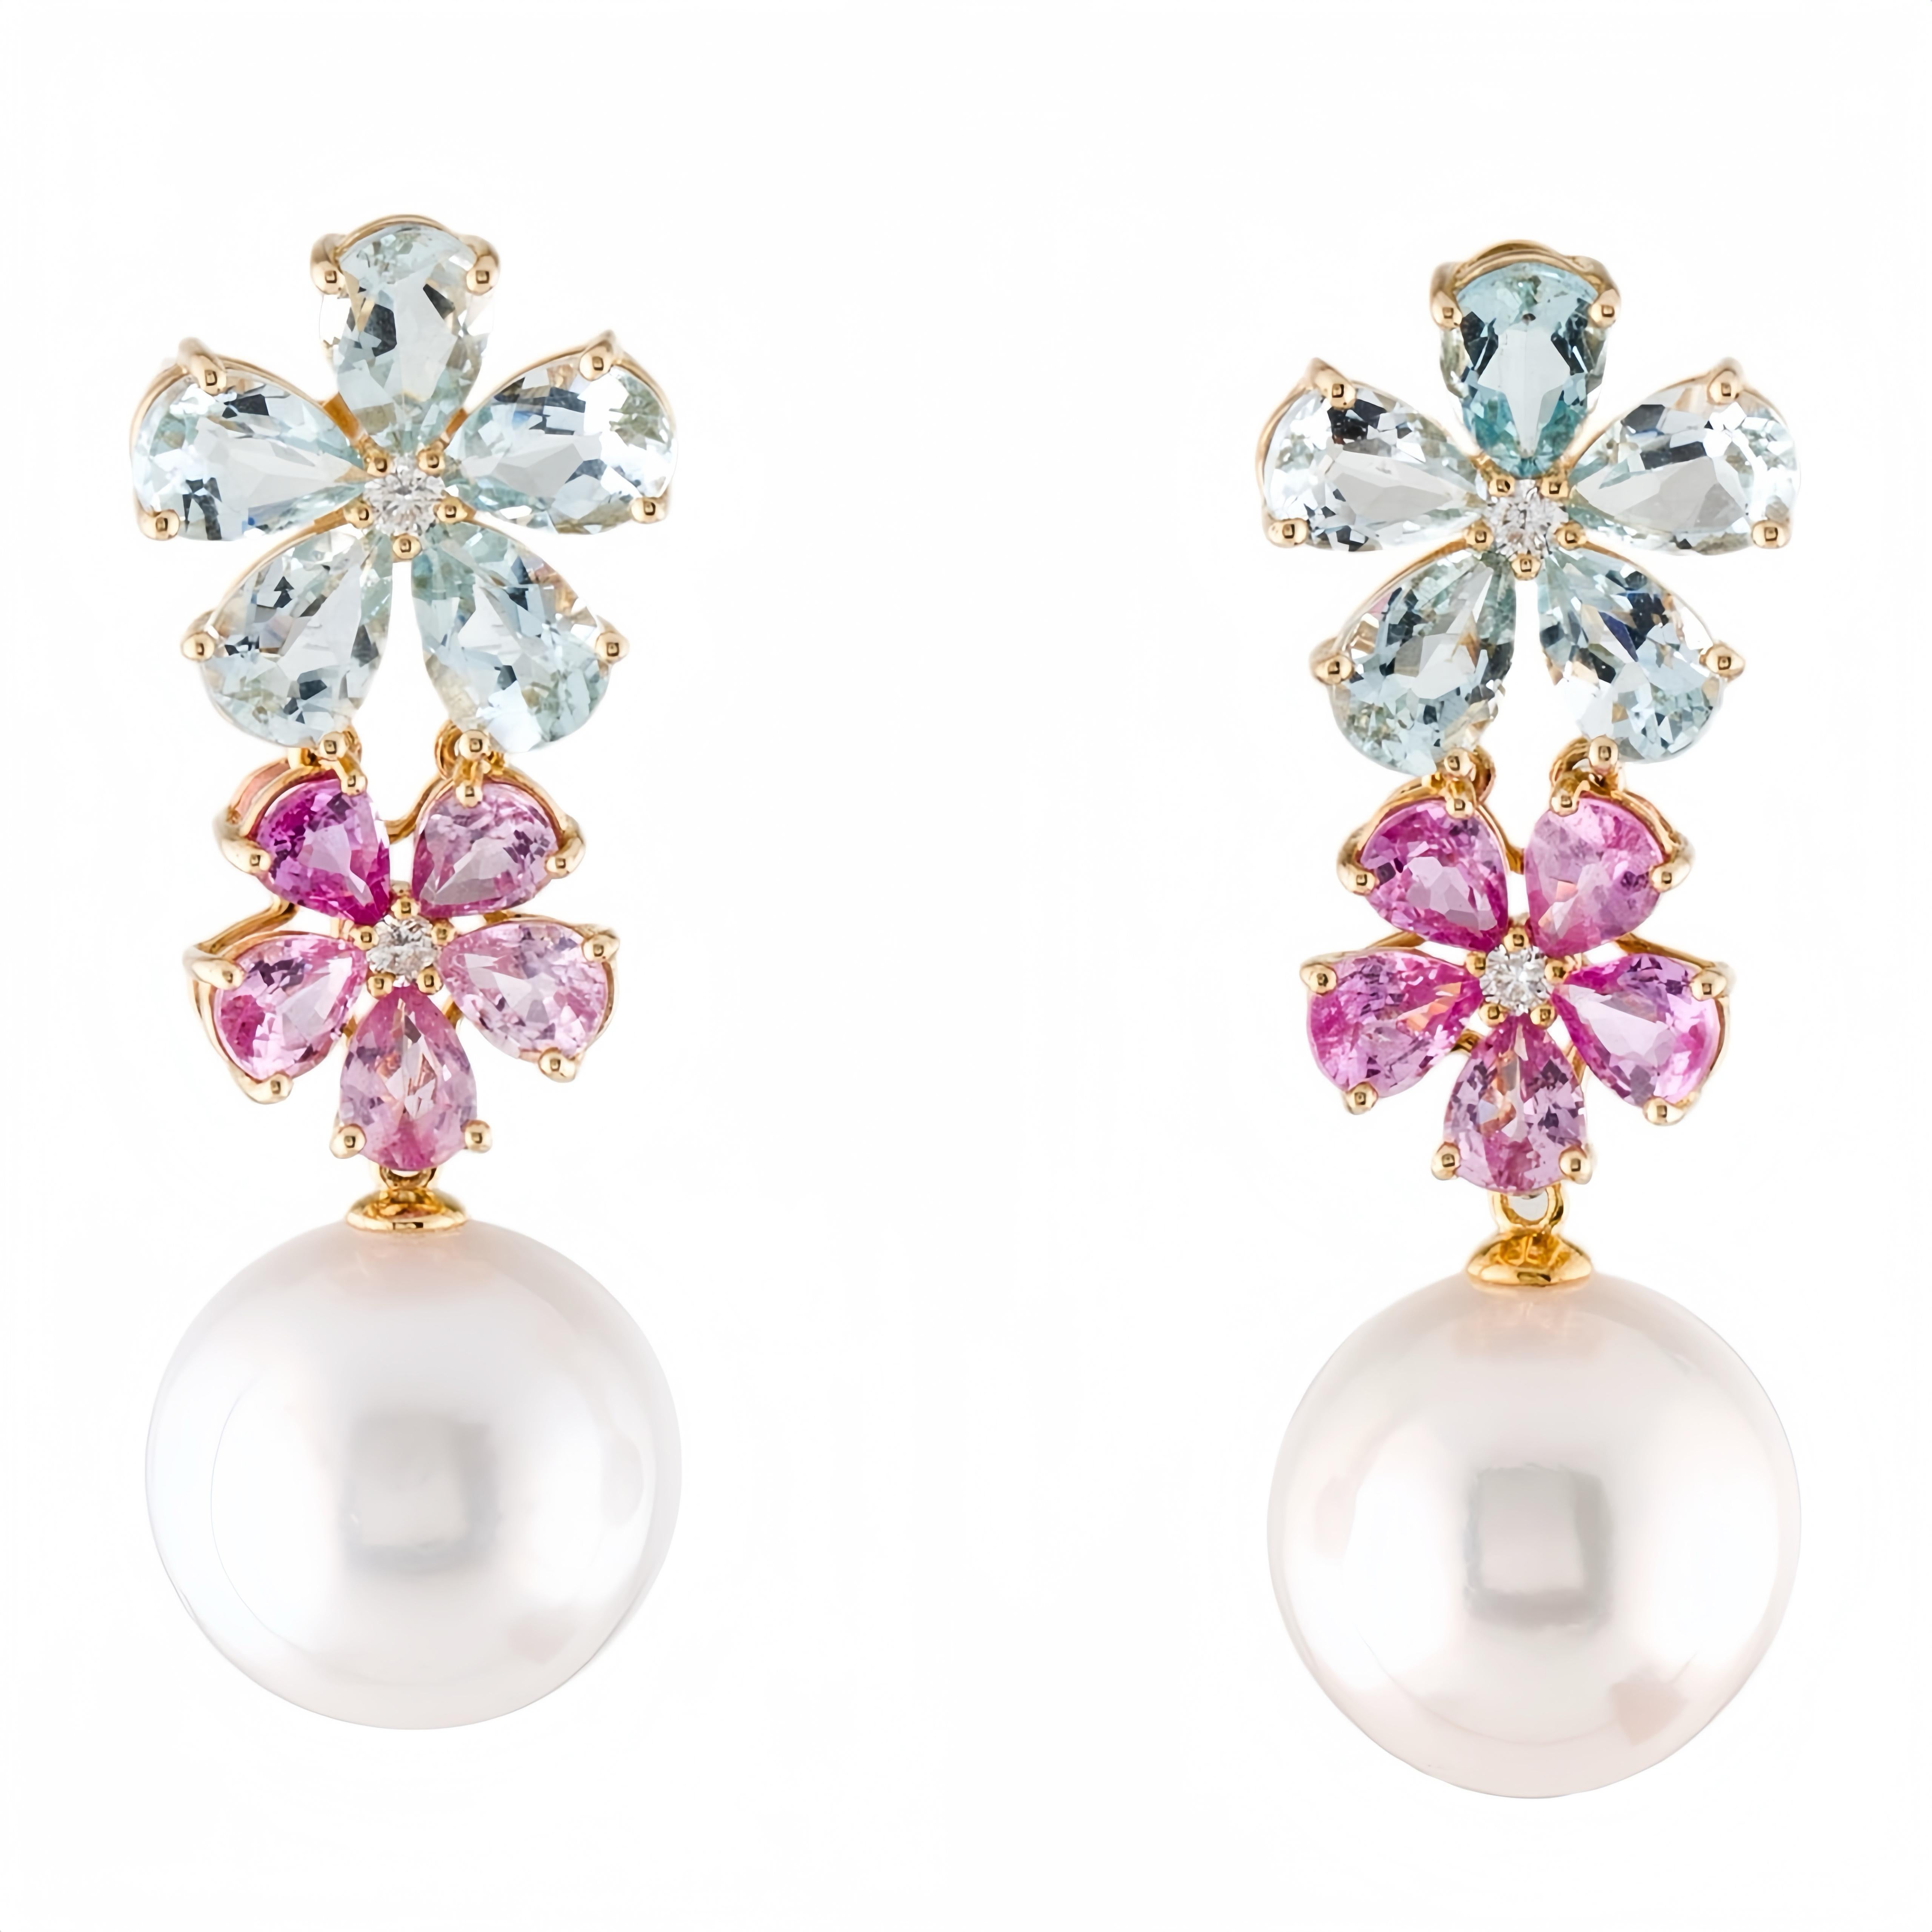 Découvrez les boucles d'oreilles Nina Zhou Aquamarine Pink Sapphire Diamond Blossom 12-13mm Pearl Convertible Eleg en or jaune 18k, représentant l'élégance intemporelle et l'artisanat complexe. Ces boucles d'oreilles exquises présentent un étonnant